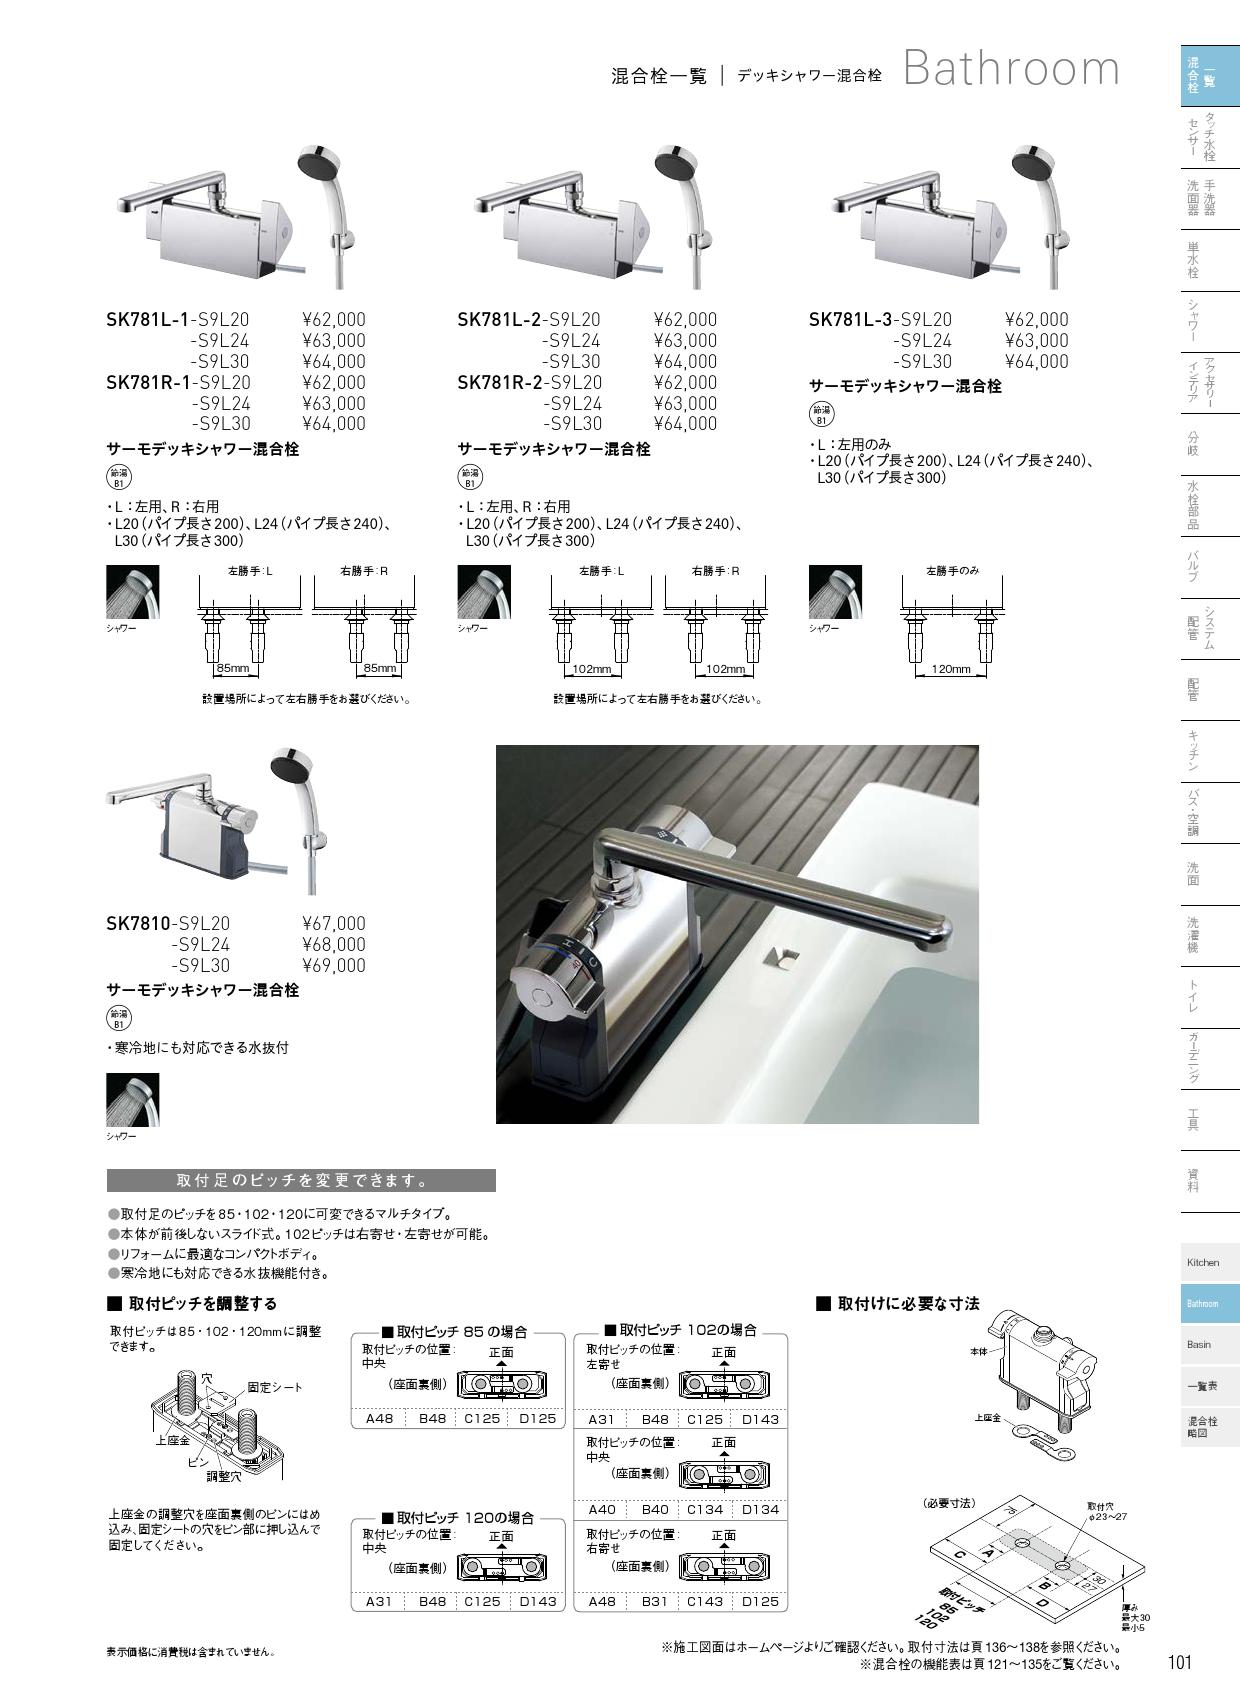 三栄水栓 SANEI U-MIX Bathroom サーモデッキシャワー混合栓 SK7810-S9L24 - 2